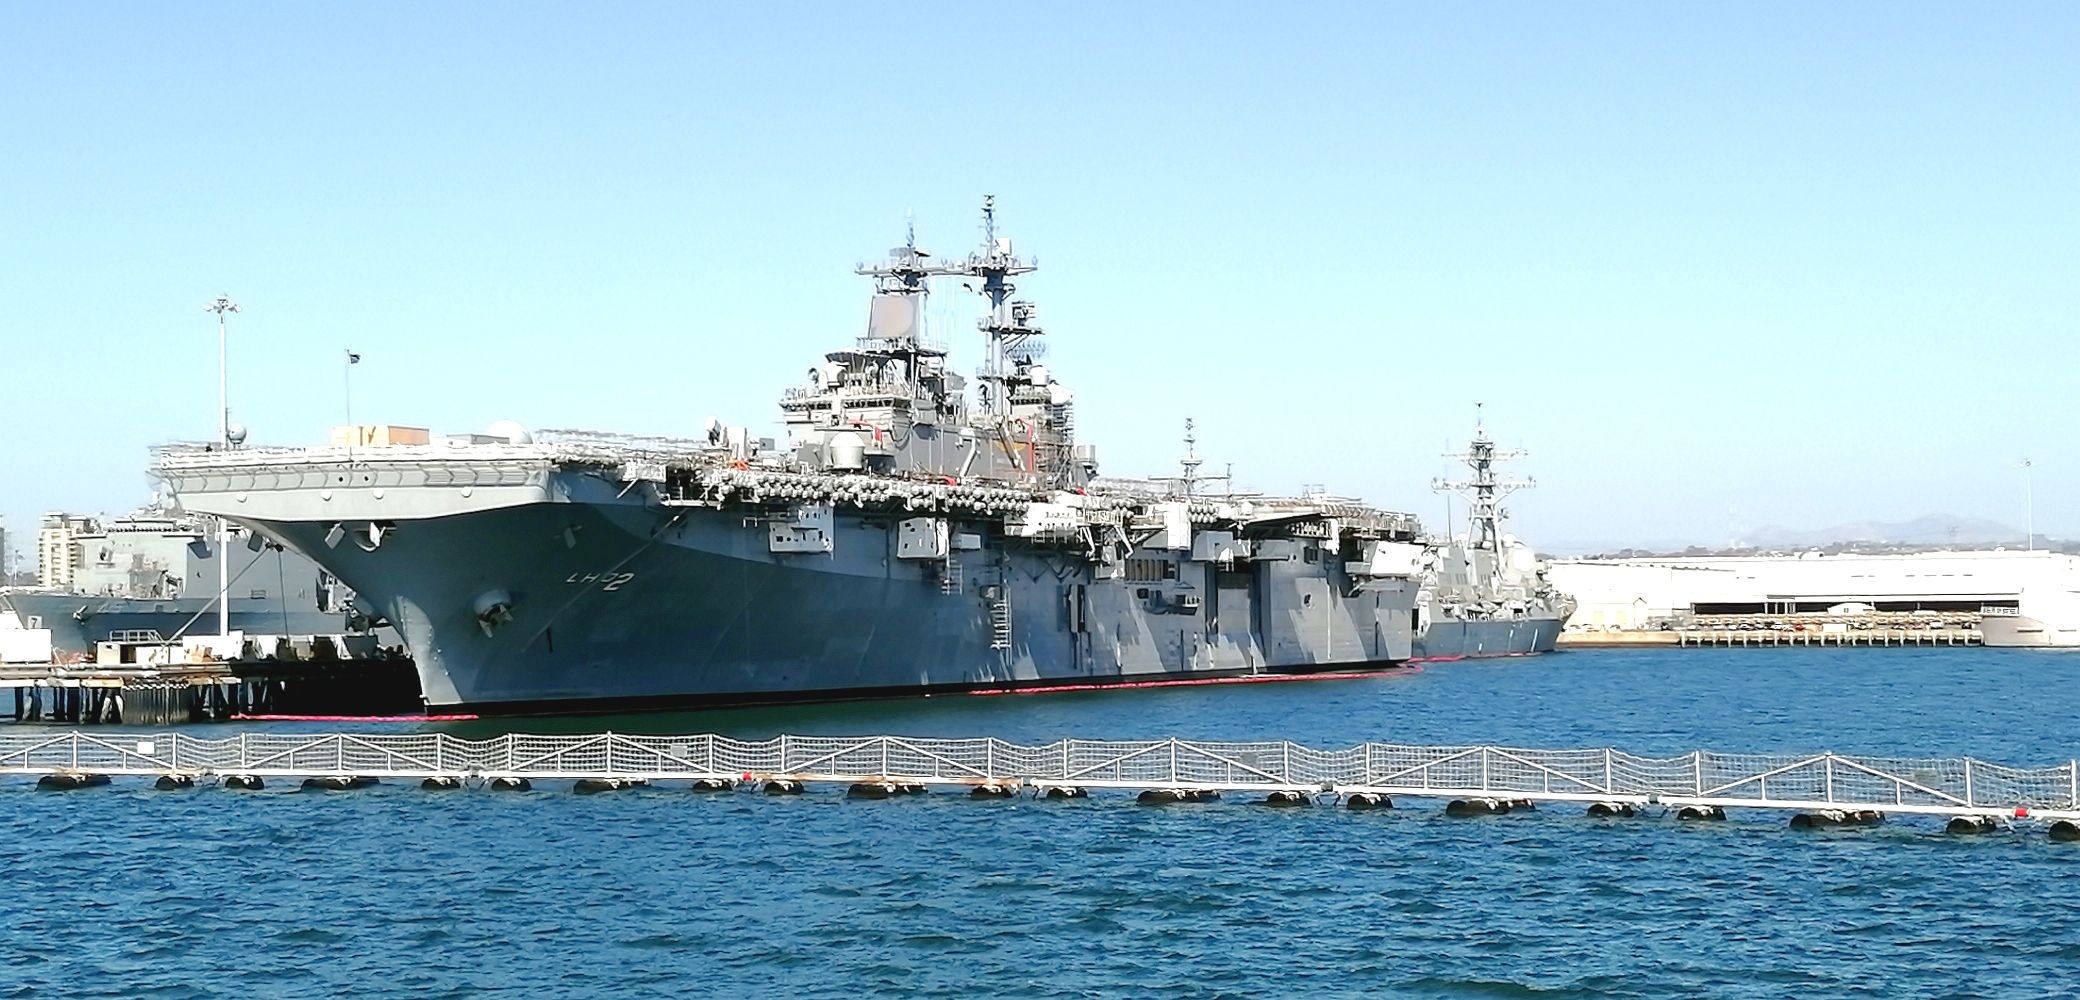 【携程攻略】圣地亚哥圣地亚哥港景点,圣地亚哥港是美国海军两大舰队之一太平洋舰队的最大军港，美国丝毫不…